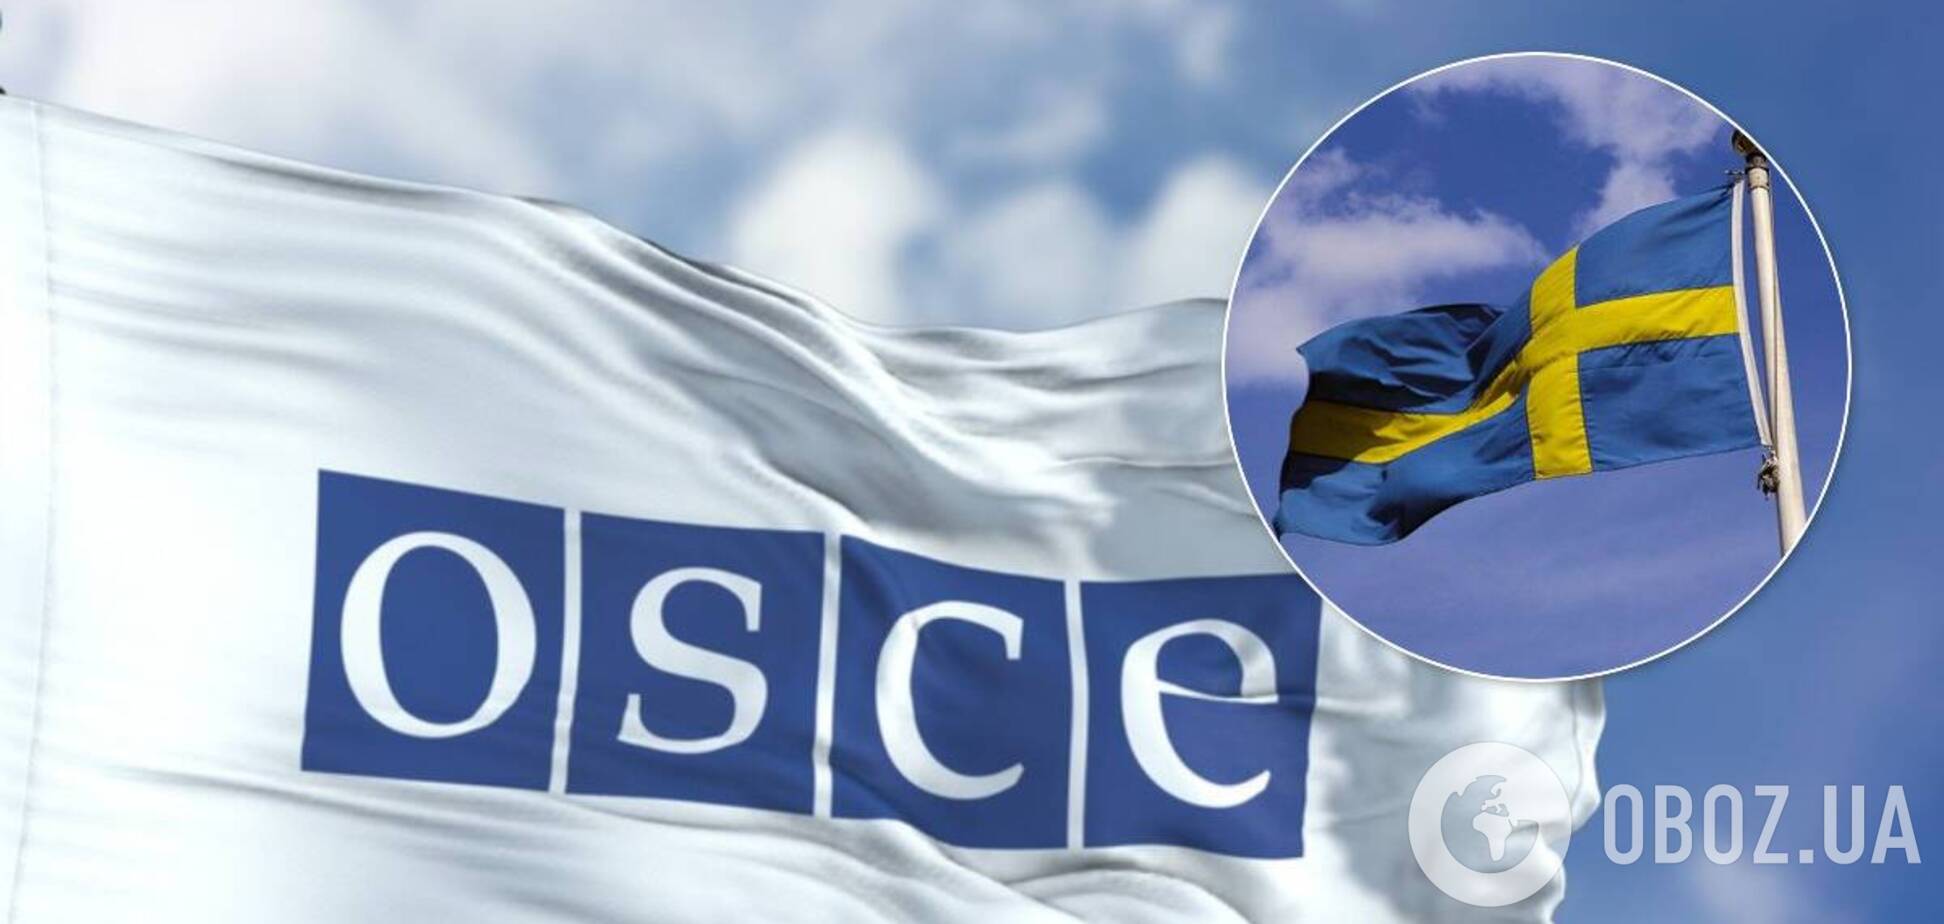 Швеция займется вопросом Крыма после того, как возглавит ОБСЕ, – замглавы МИД